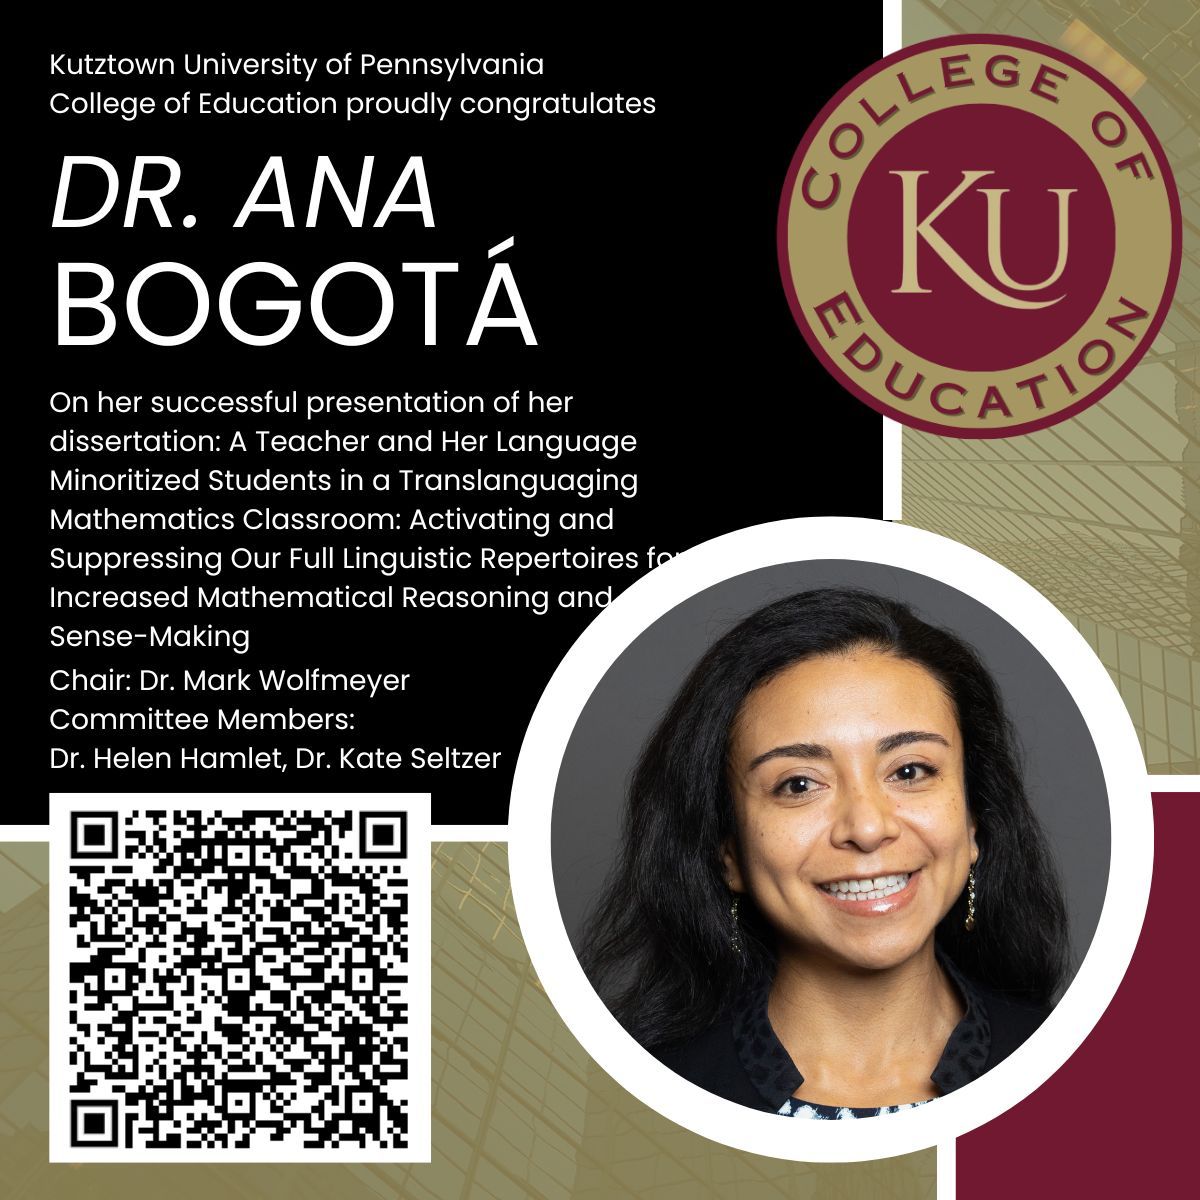 Congratulations to Dr. Ana Bogotá on her successful dissertation!
@KutztownU @PASDSchools @KutztownAlumni #KUCOE #EducationAtKU #EDD #PAProud